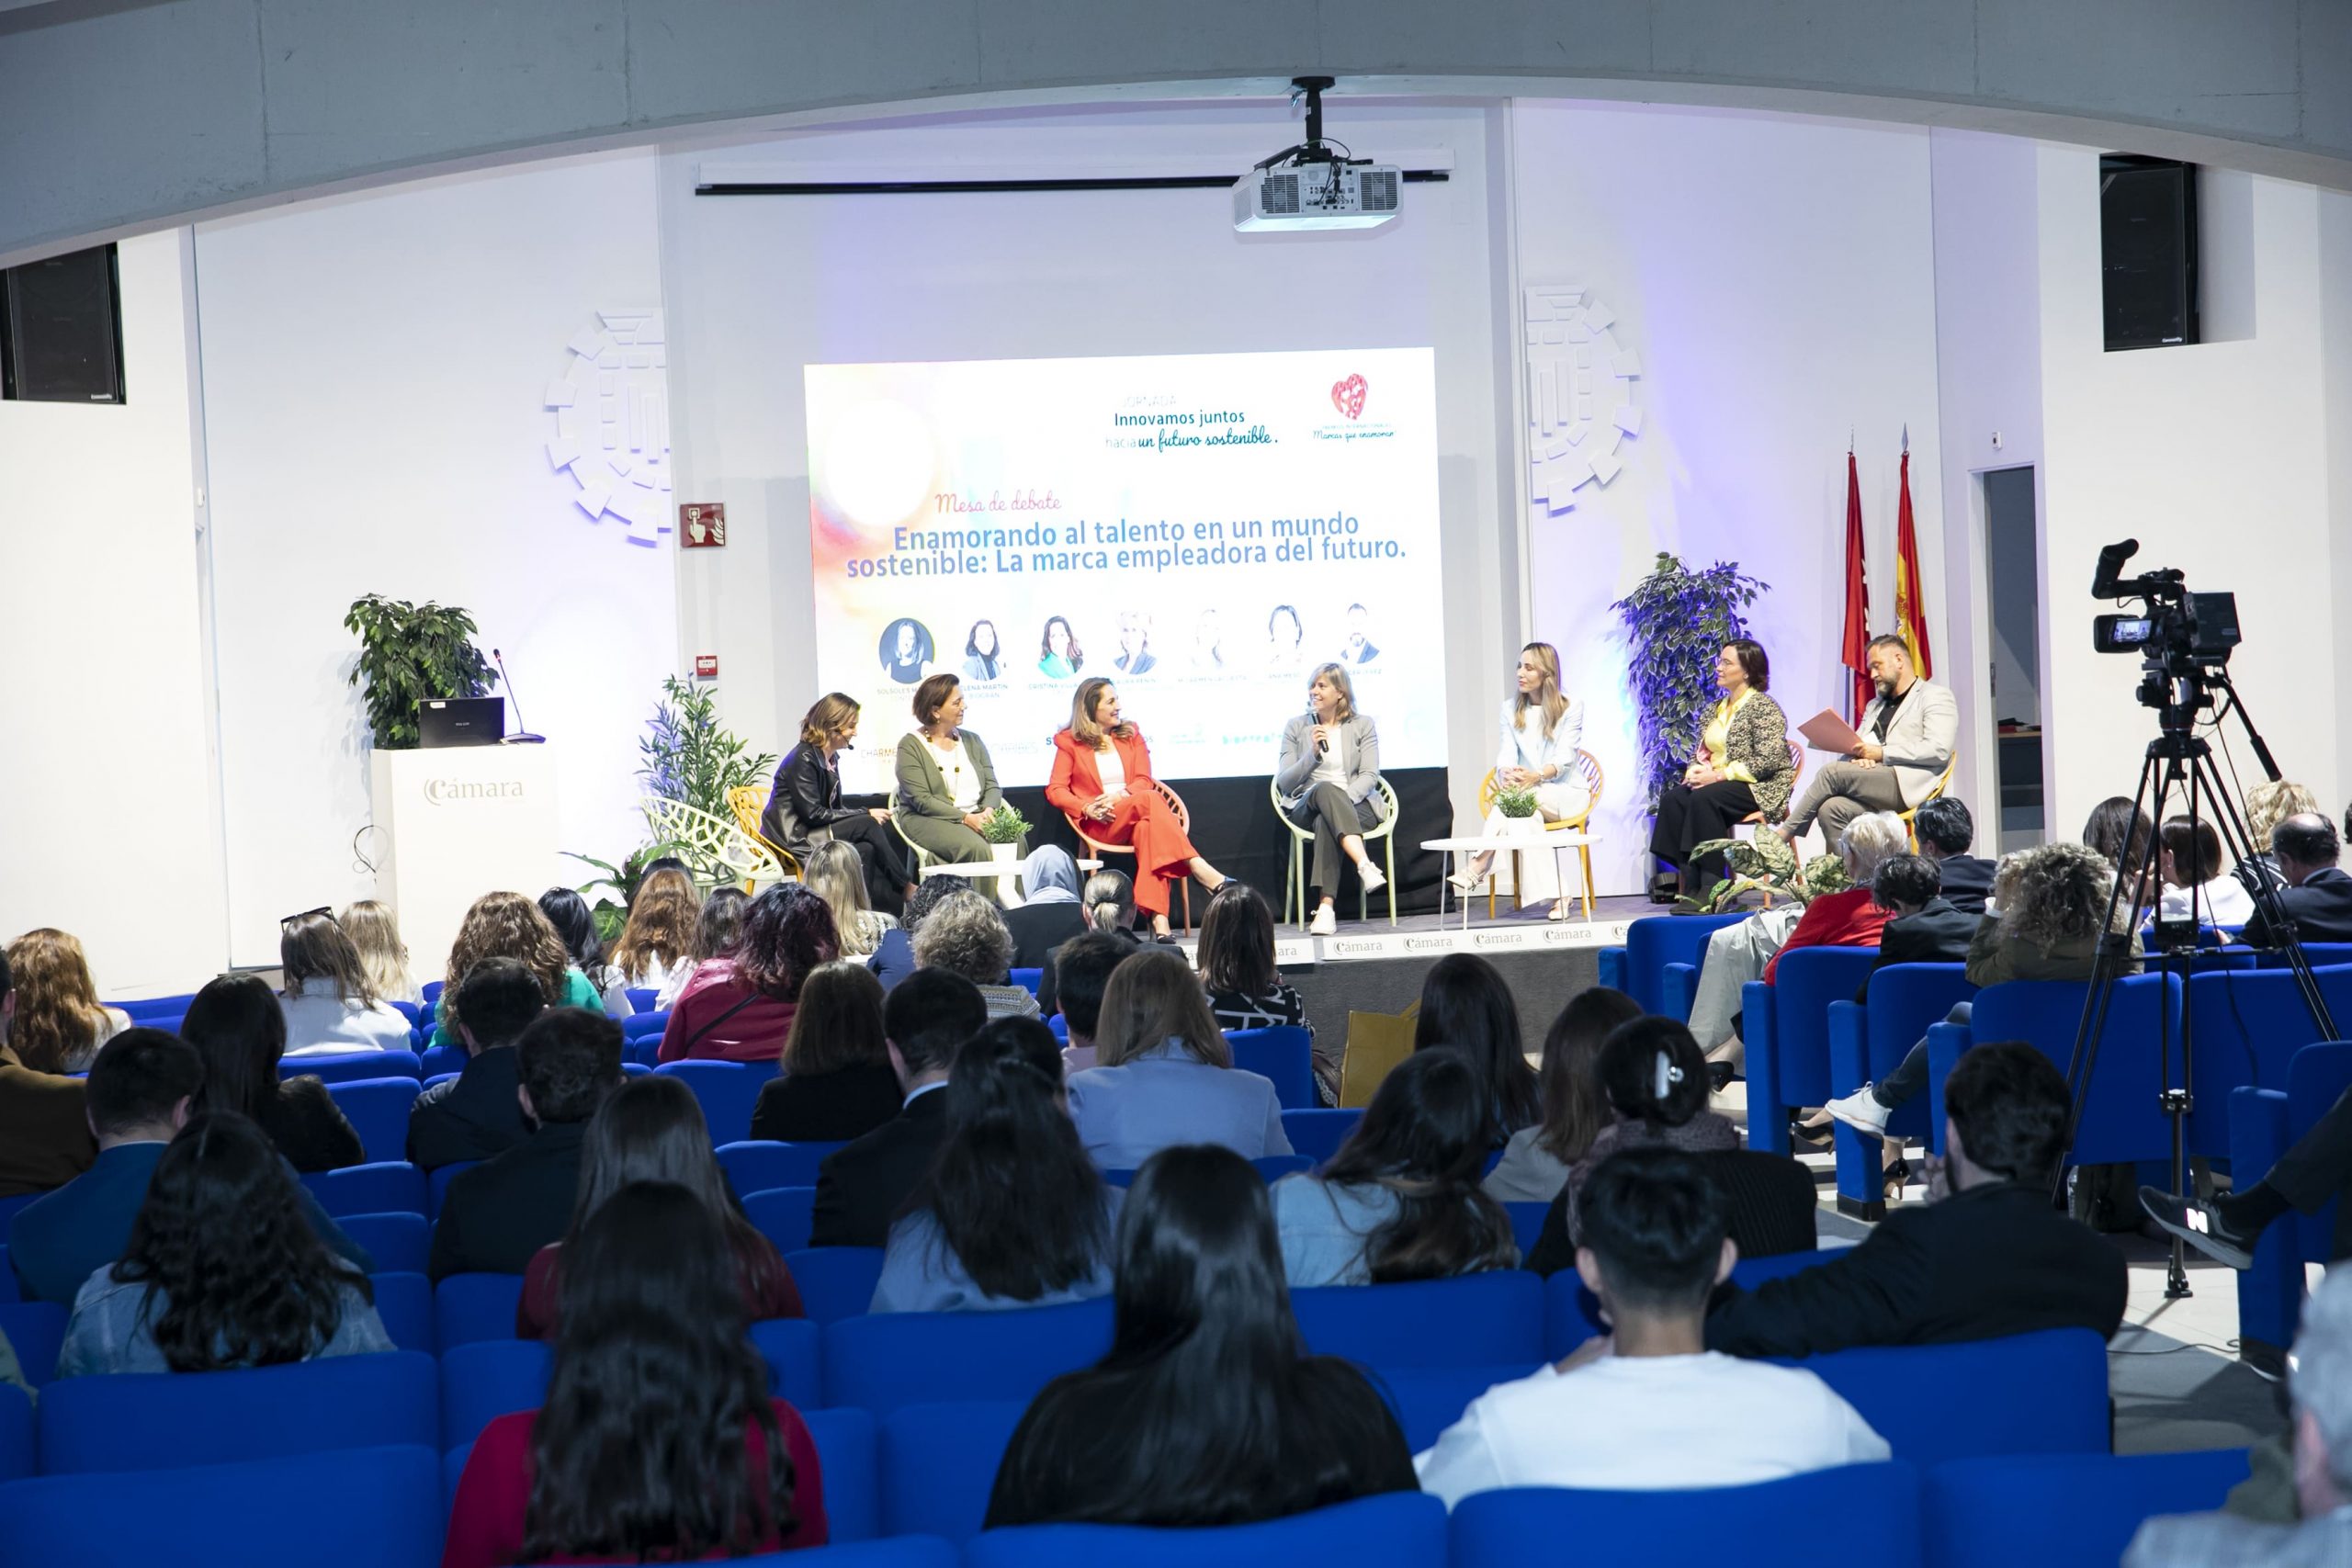 Speedtalks y mesas de debate en Jornada Innovamos juntos hacia un futuro sostenible.